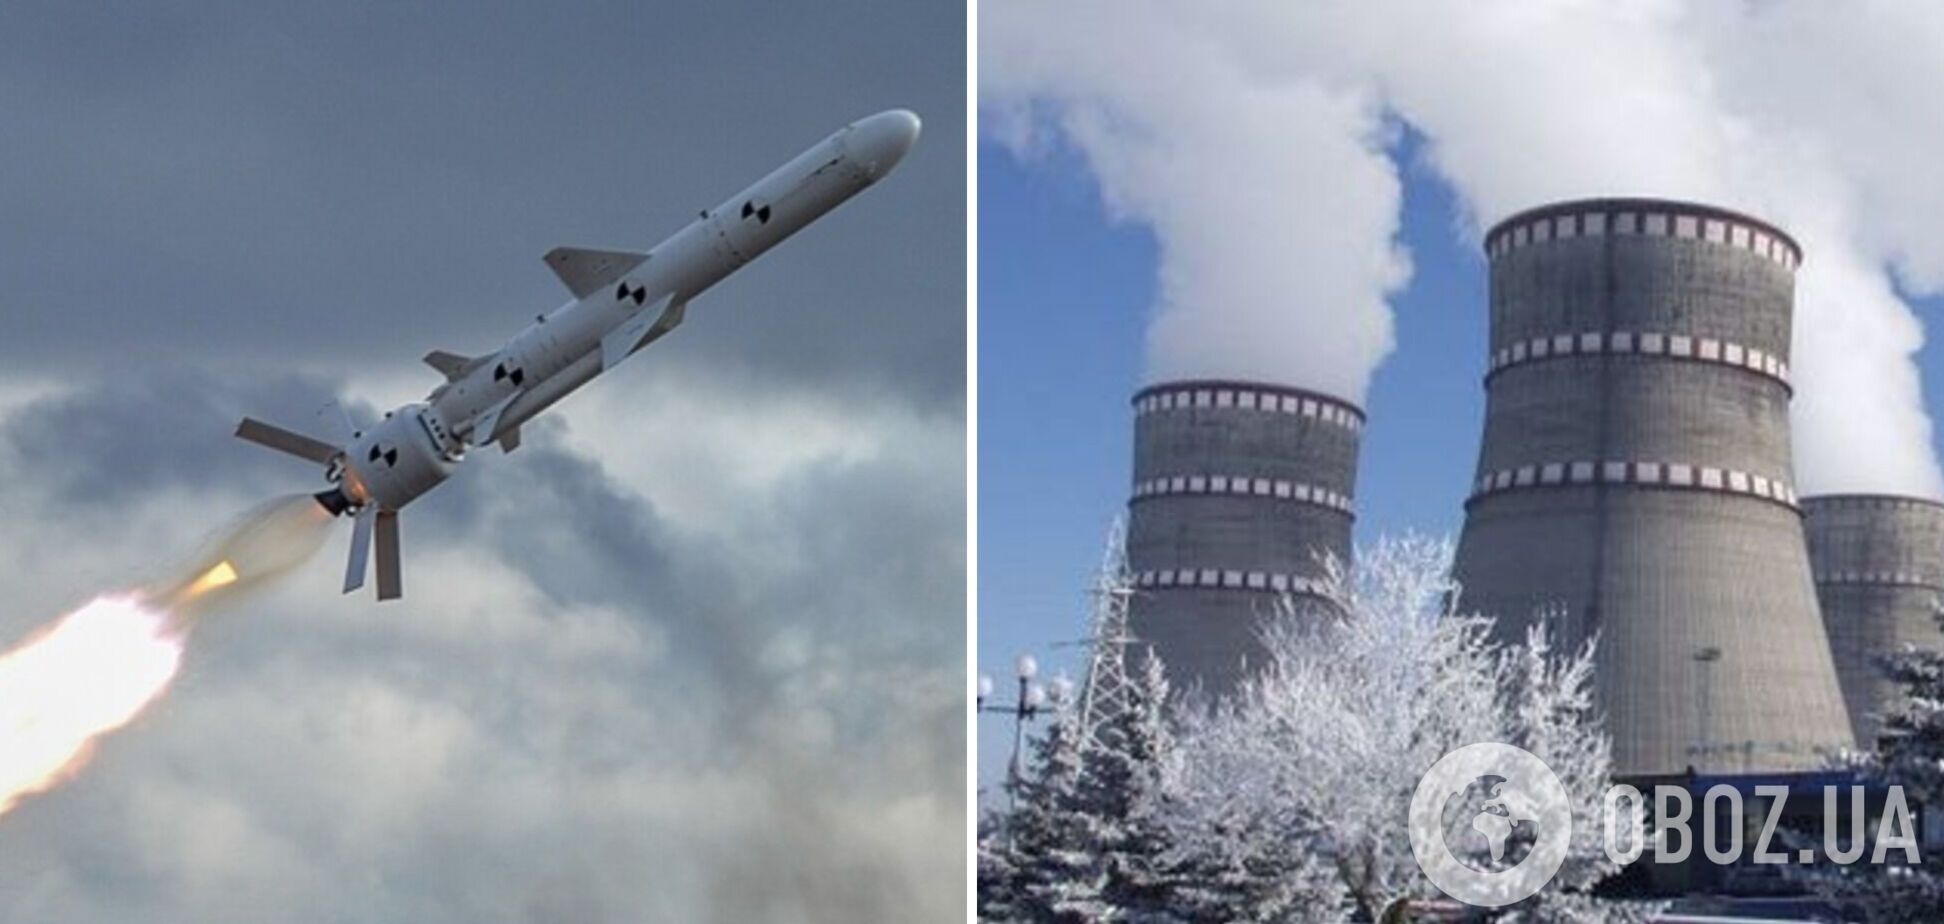 Над Хмельницкой АЭС зафиксировали две российские ракеты